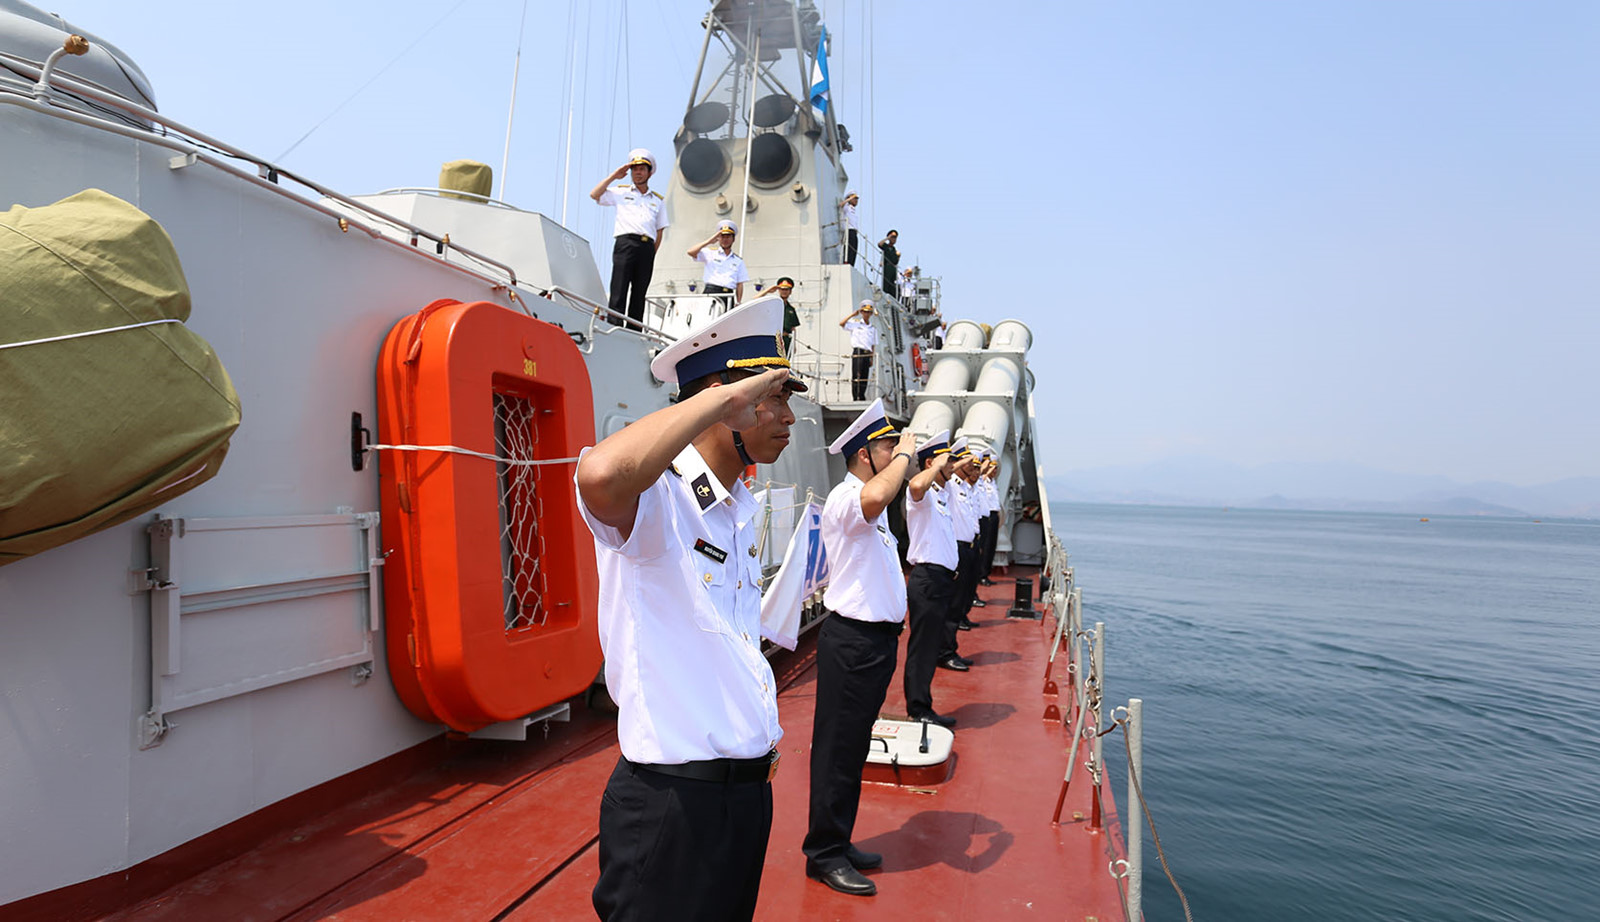 Cán bộ chiến sĩ tàu tên lửa 381 và Lữ đoàn 126, Đặc công Hải quân chào cảng trước khi lên đường làm nhiệm vụ